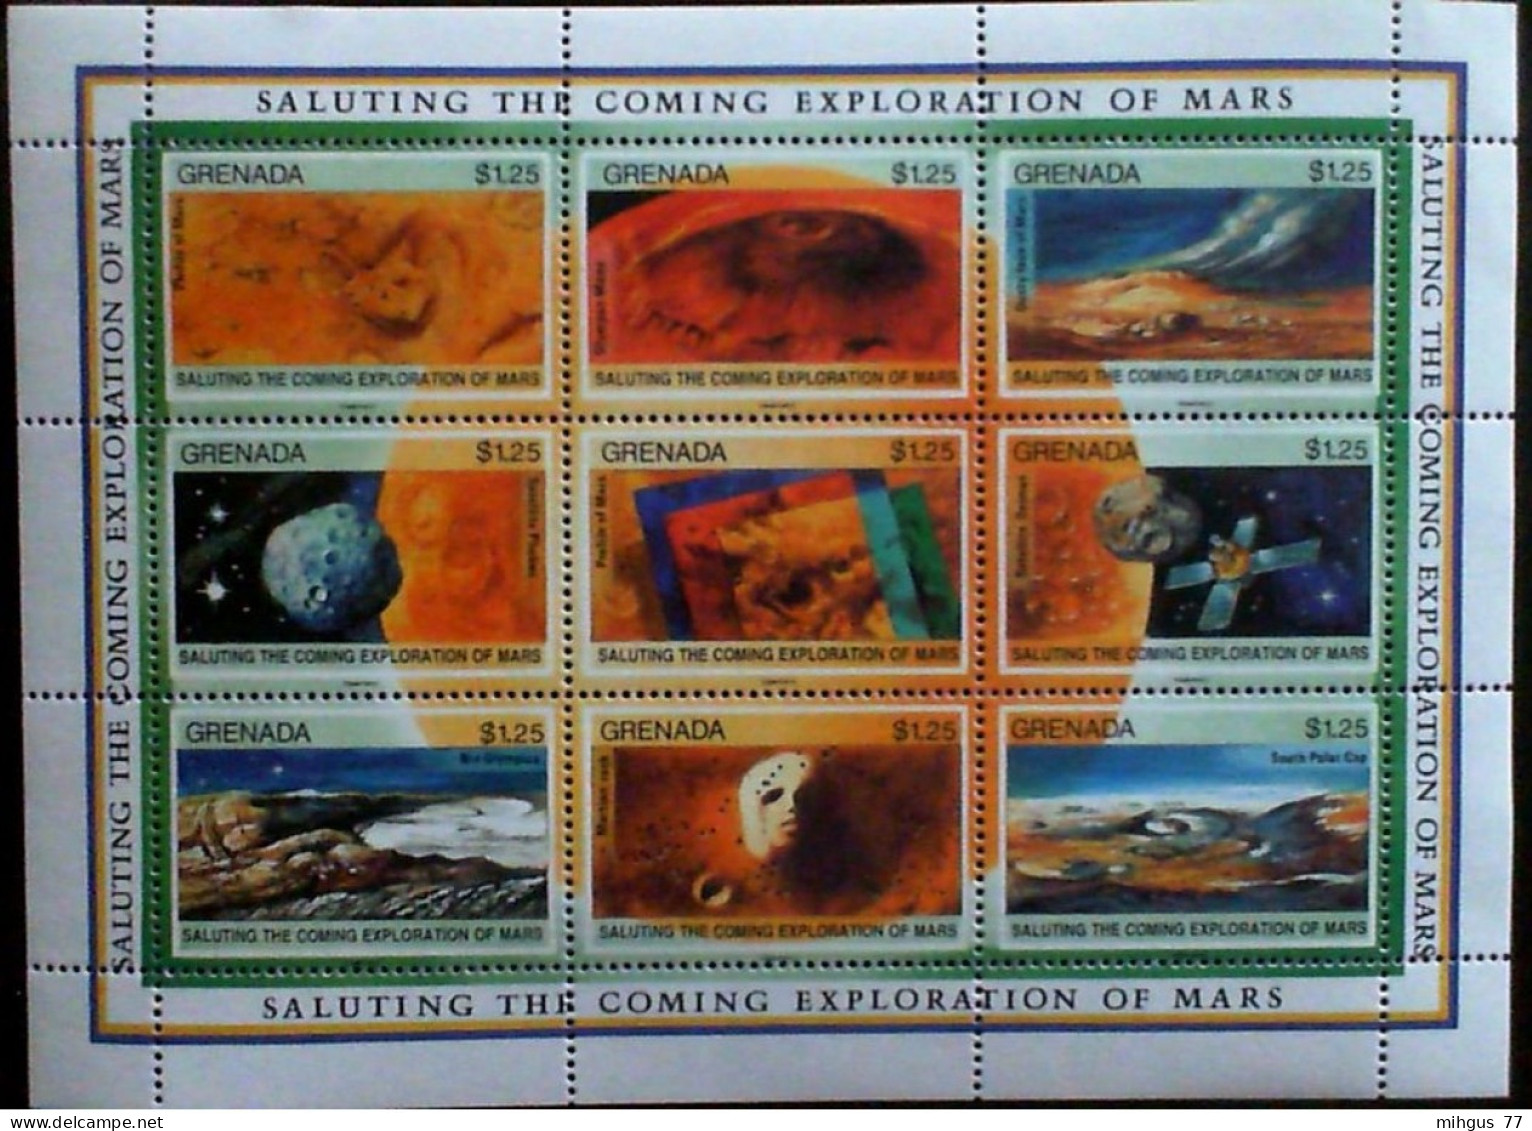 GRENADA , 1991.Mars Exploration And Malta Conference, Second Set. Sheetlet Of 9 Stamps. - Oceanië